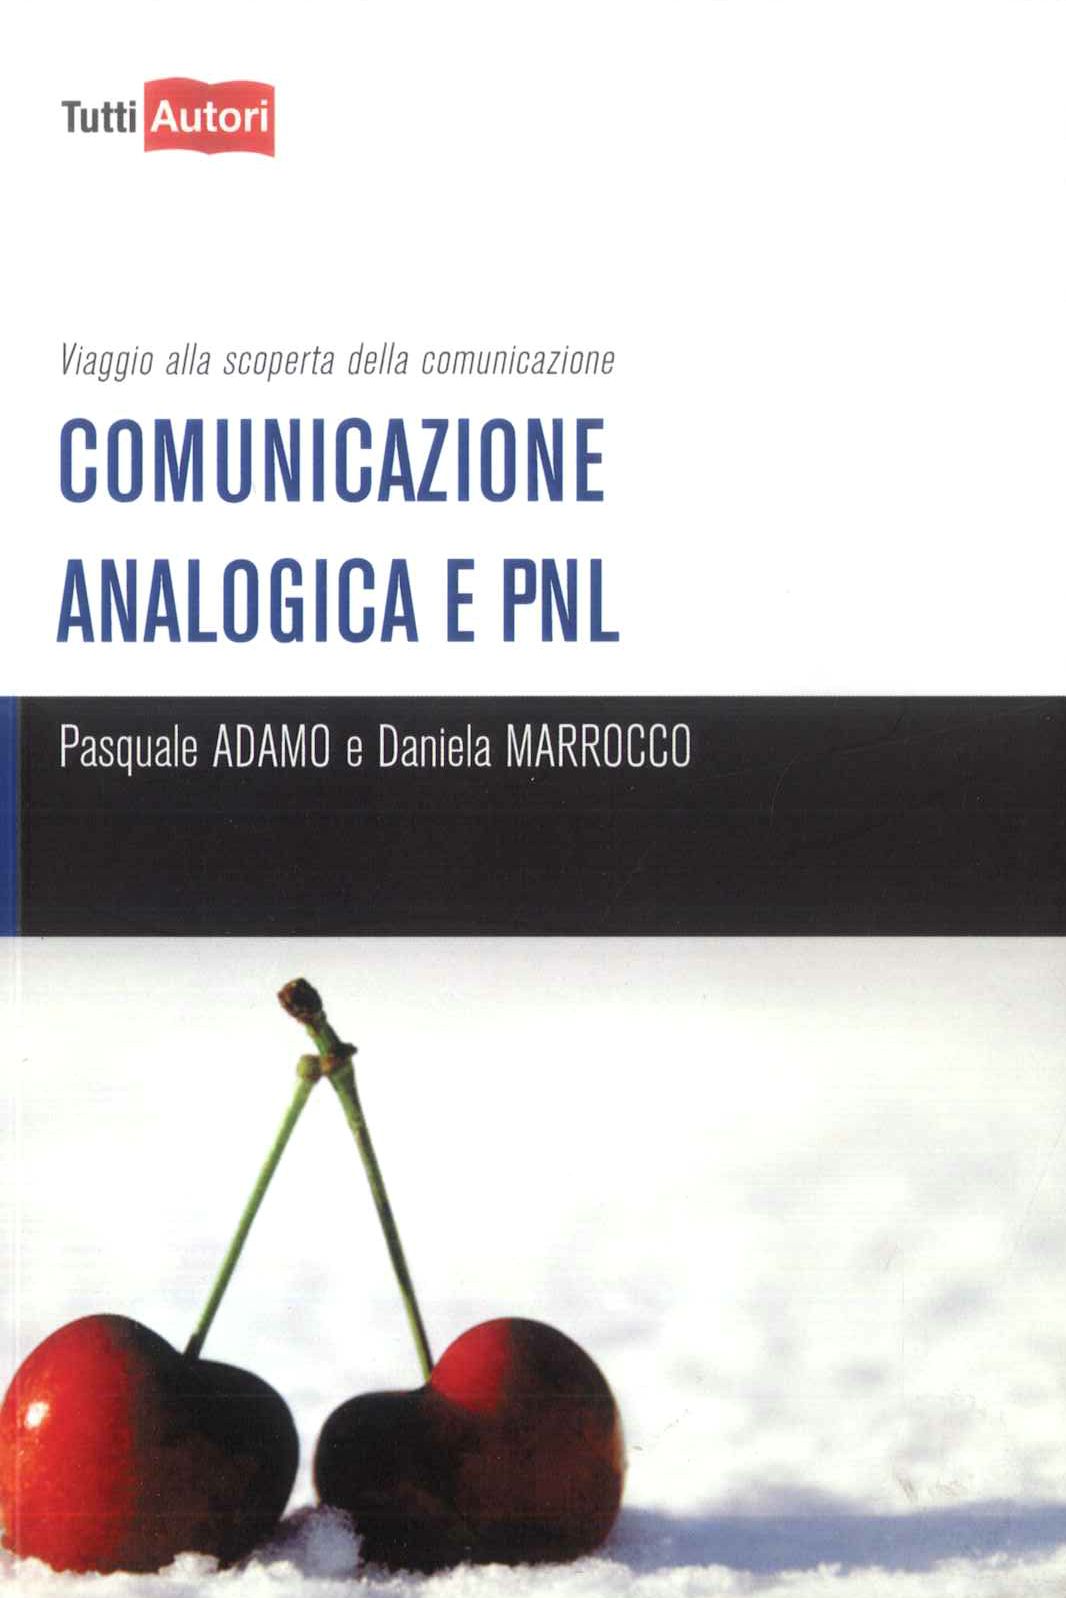 Comunicazione analogica e PNL